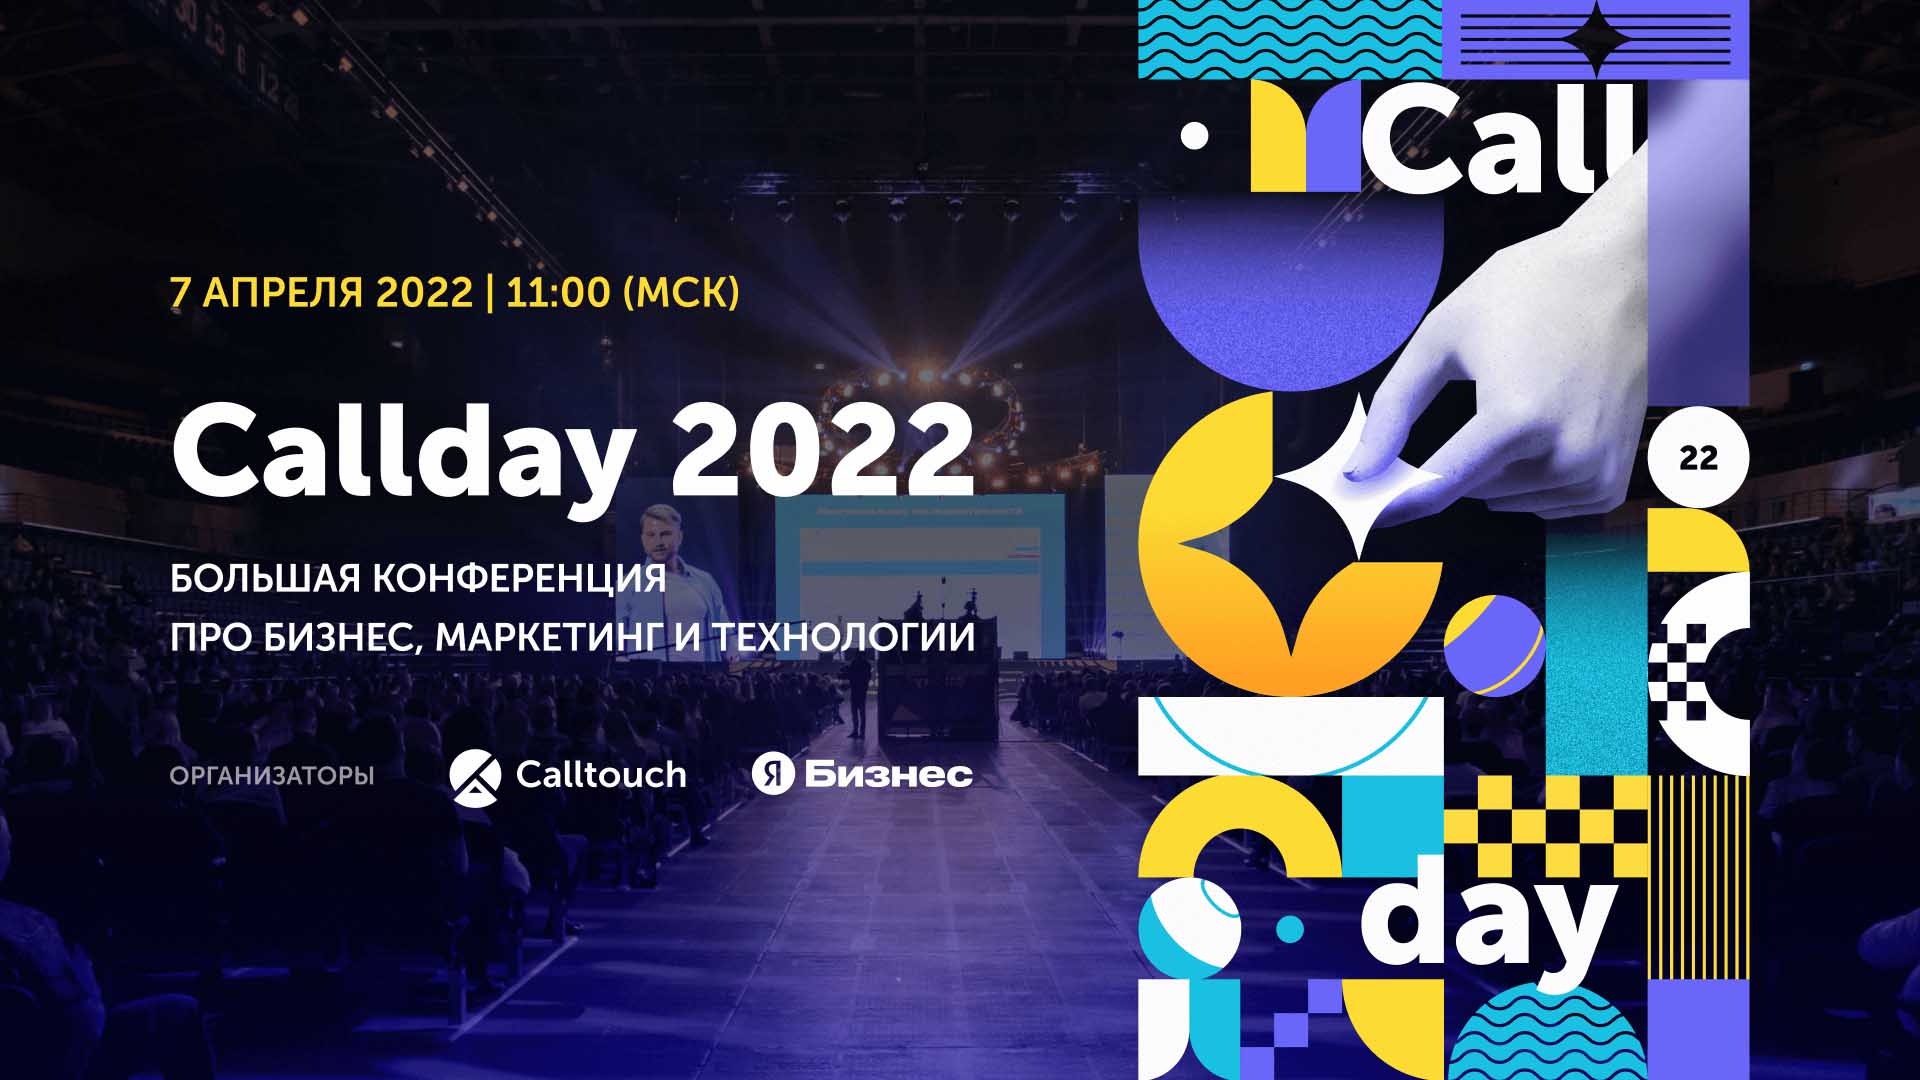 07 апреля 2022 г. Callday 2022: большая конференция про бизнес, технологии и маркетинг